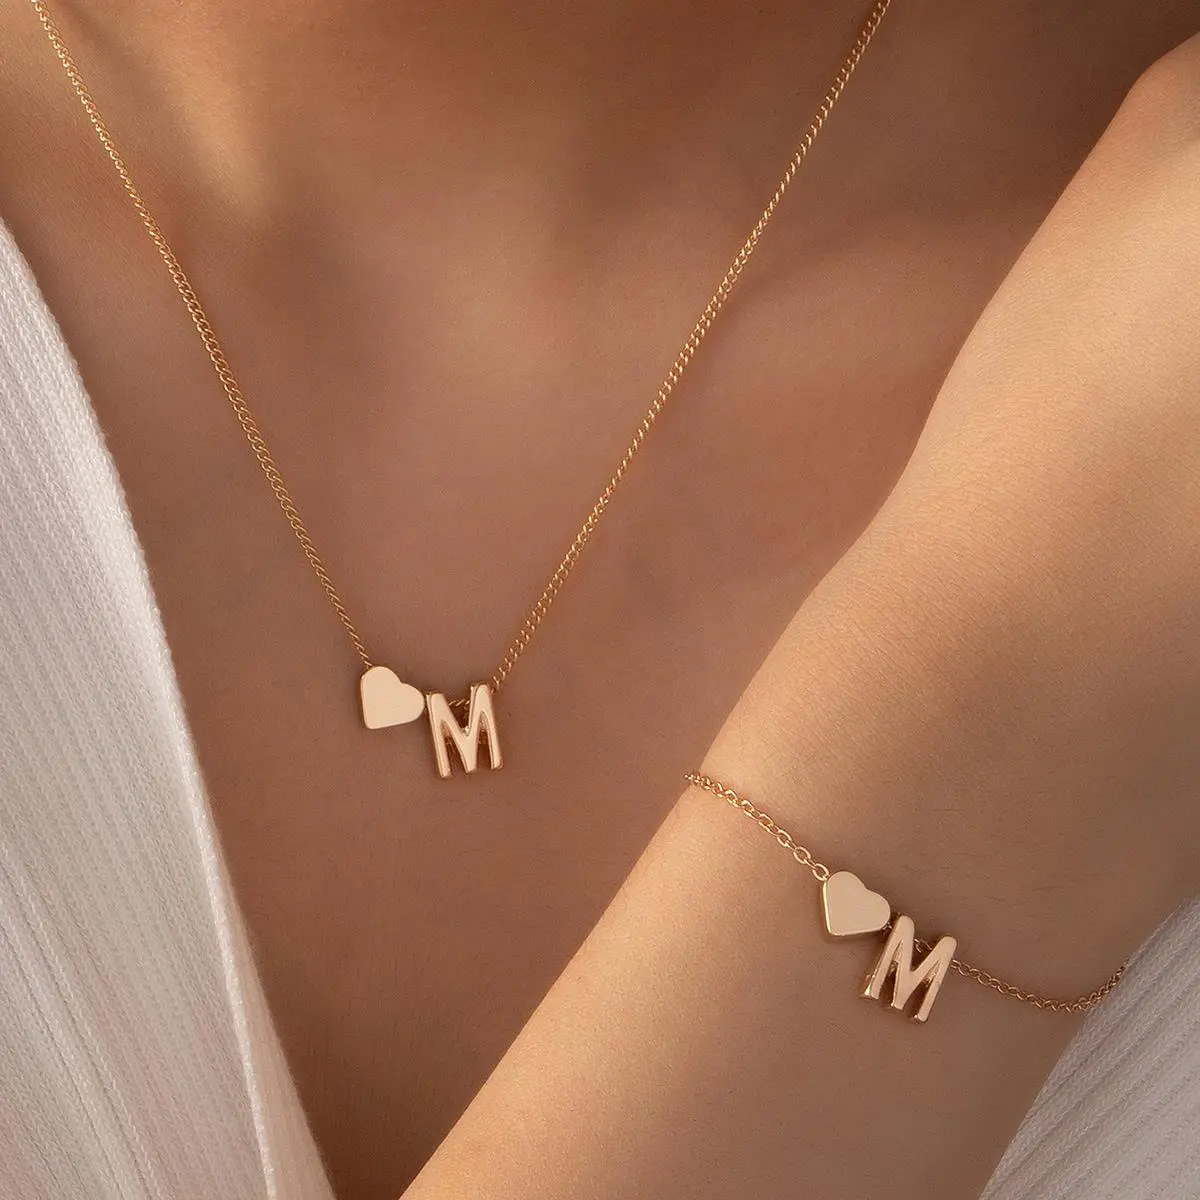 Exquisite einfache Edelstahl Frauen benutzer definierte Kette Halskette Alphabet Buchstabe Herz Anhänger Halskette